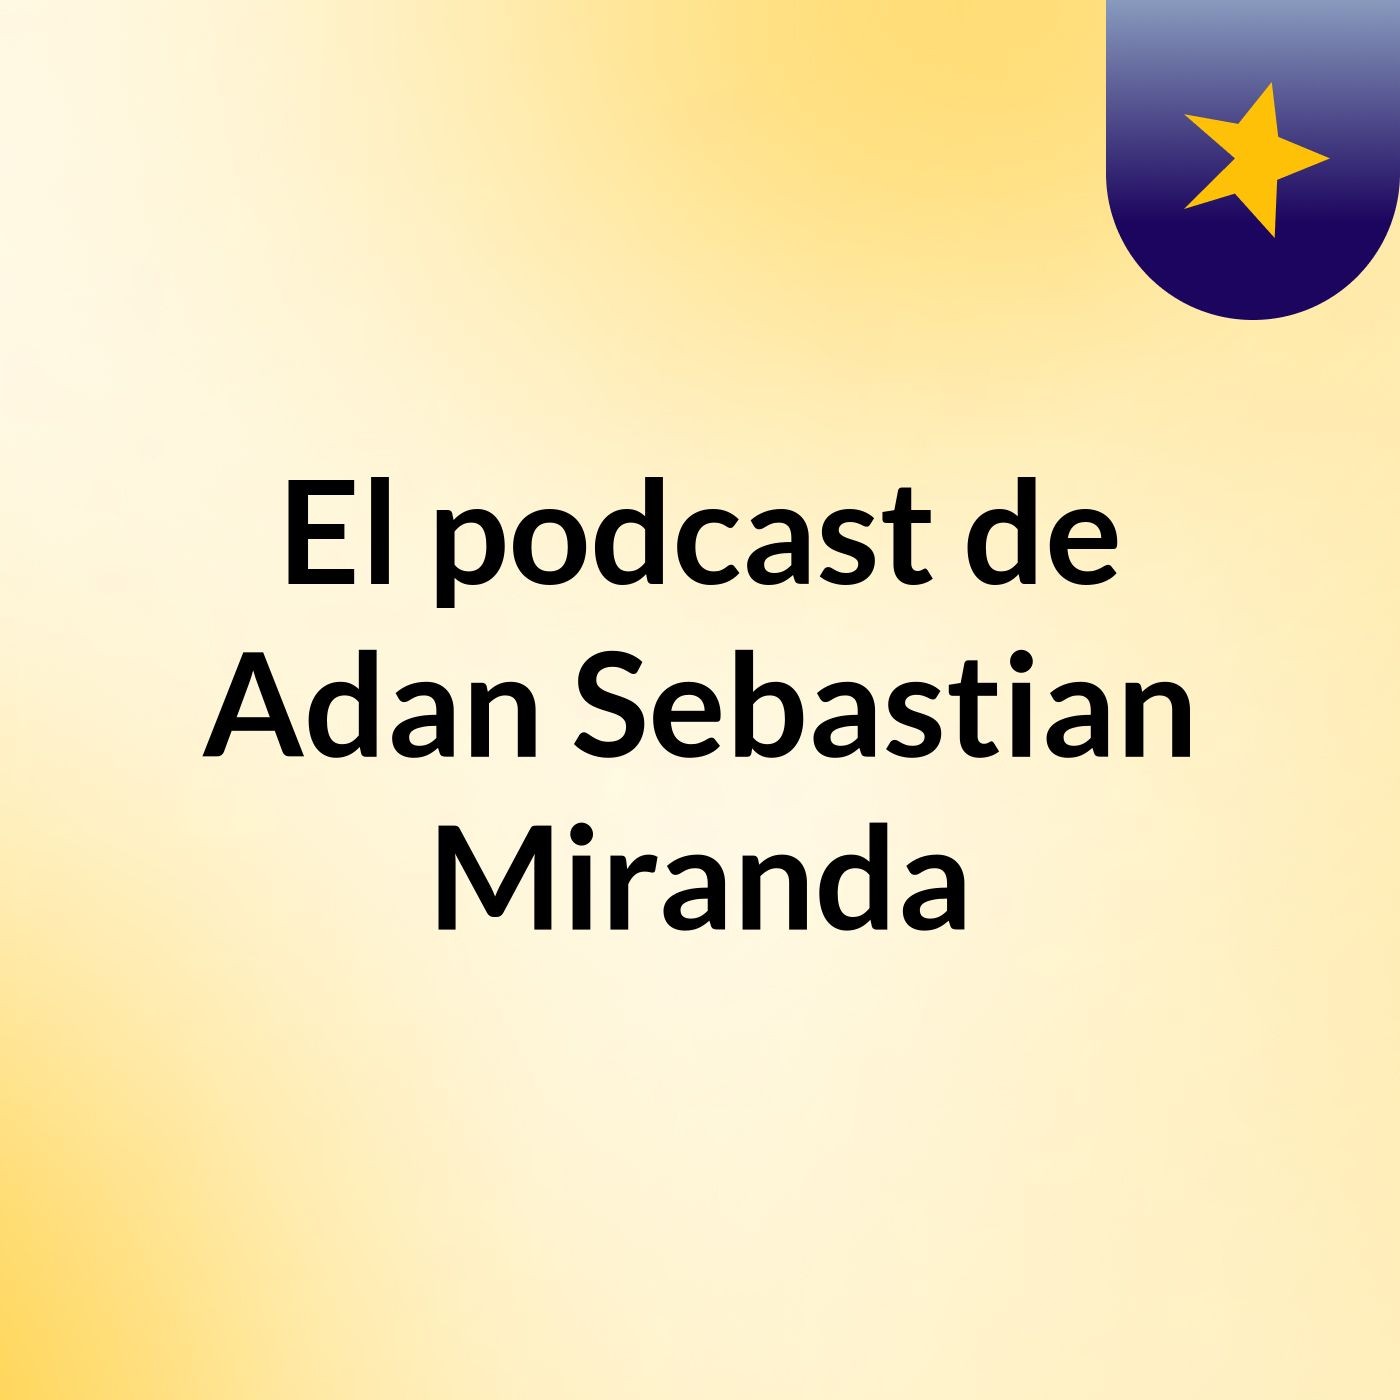 El podcast de Adan Sebastian Miranda